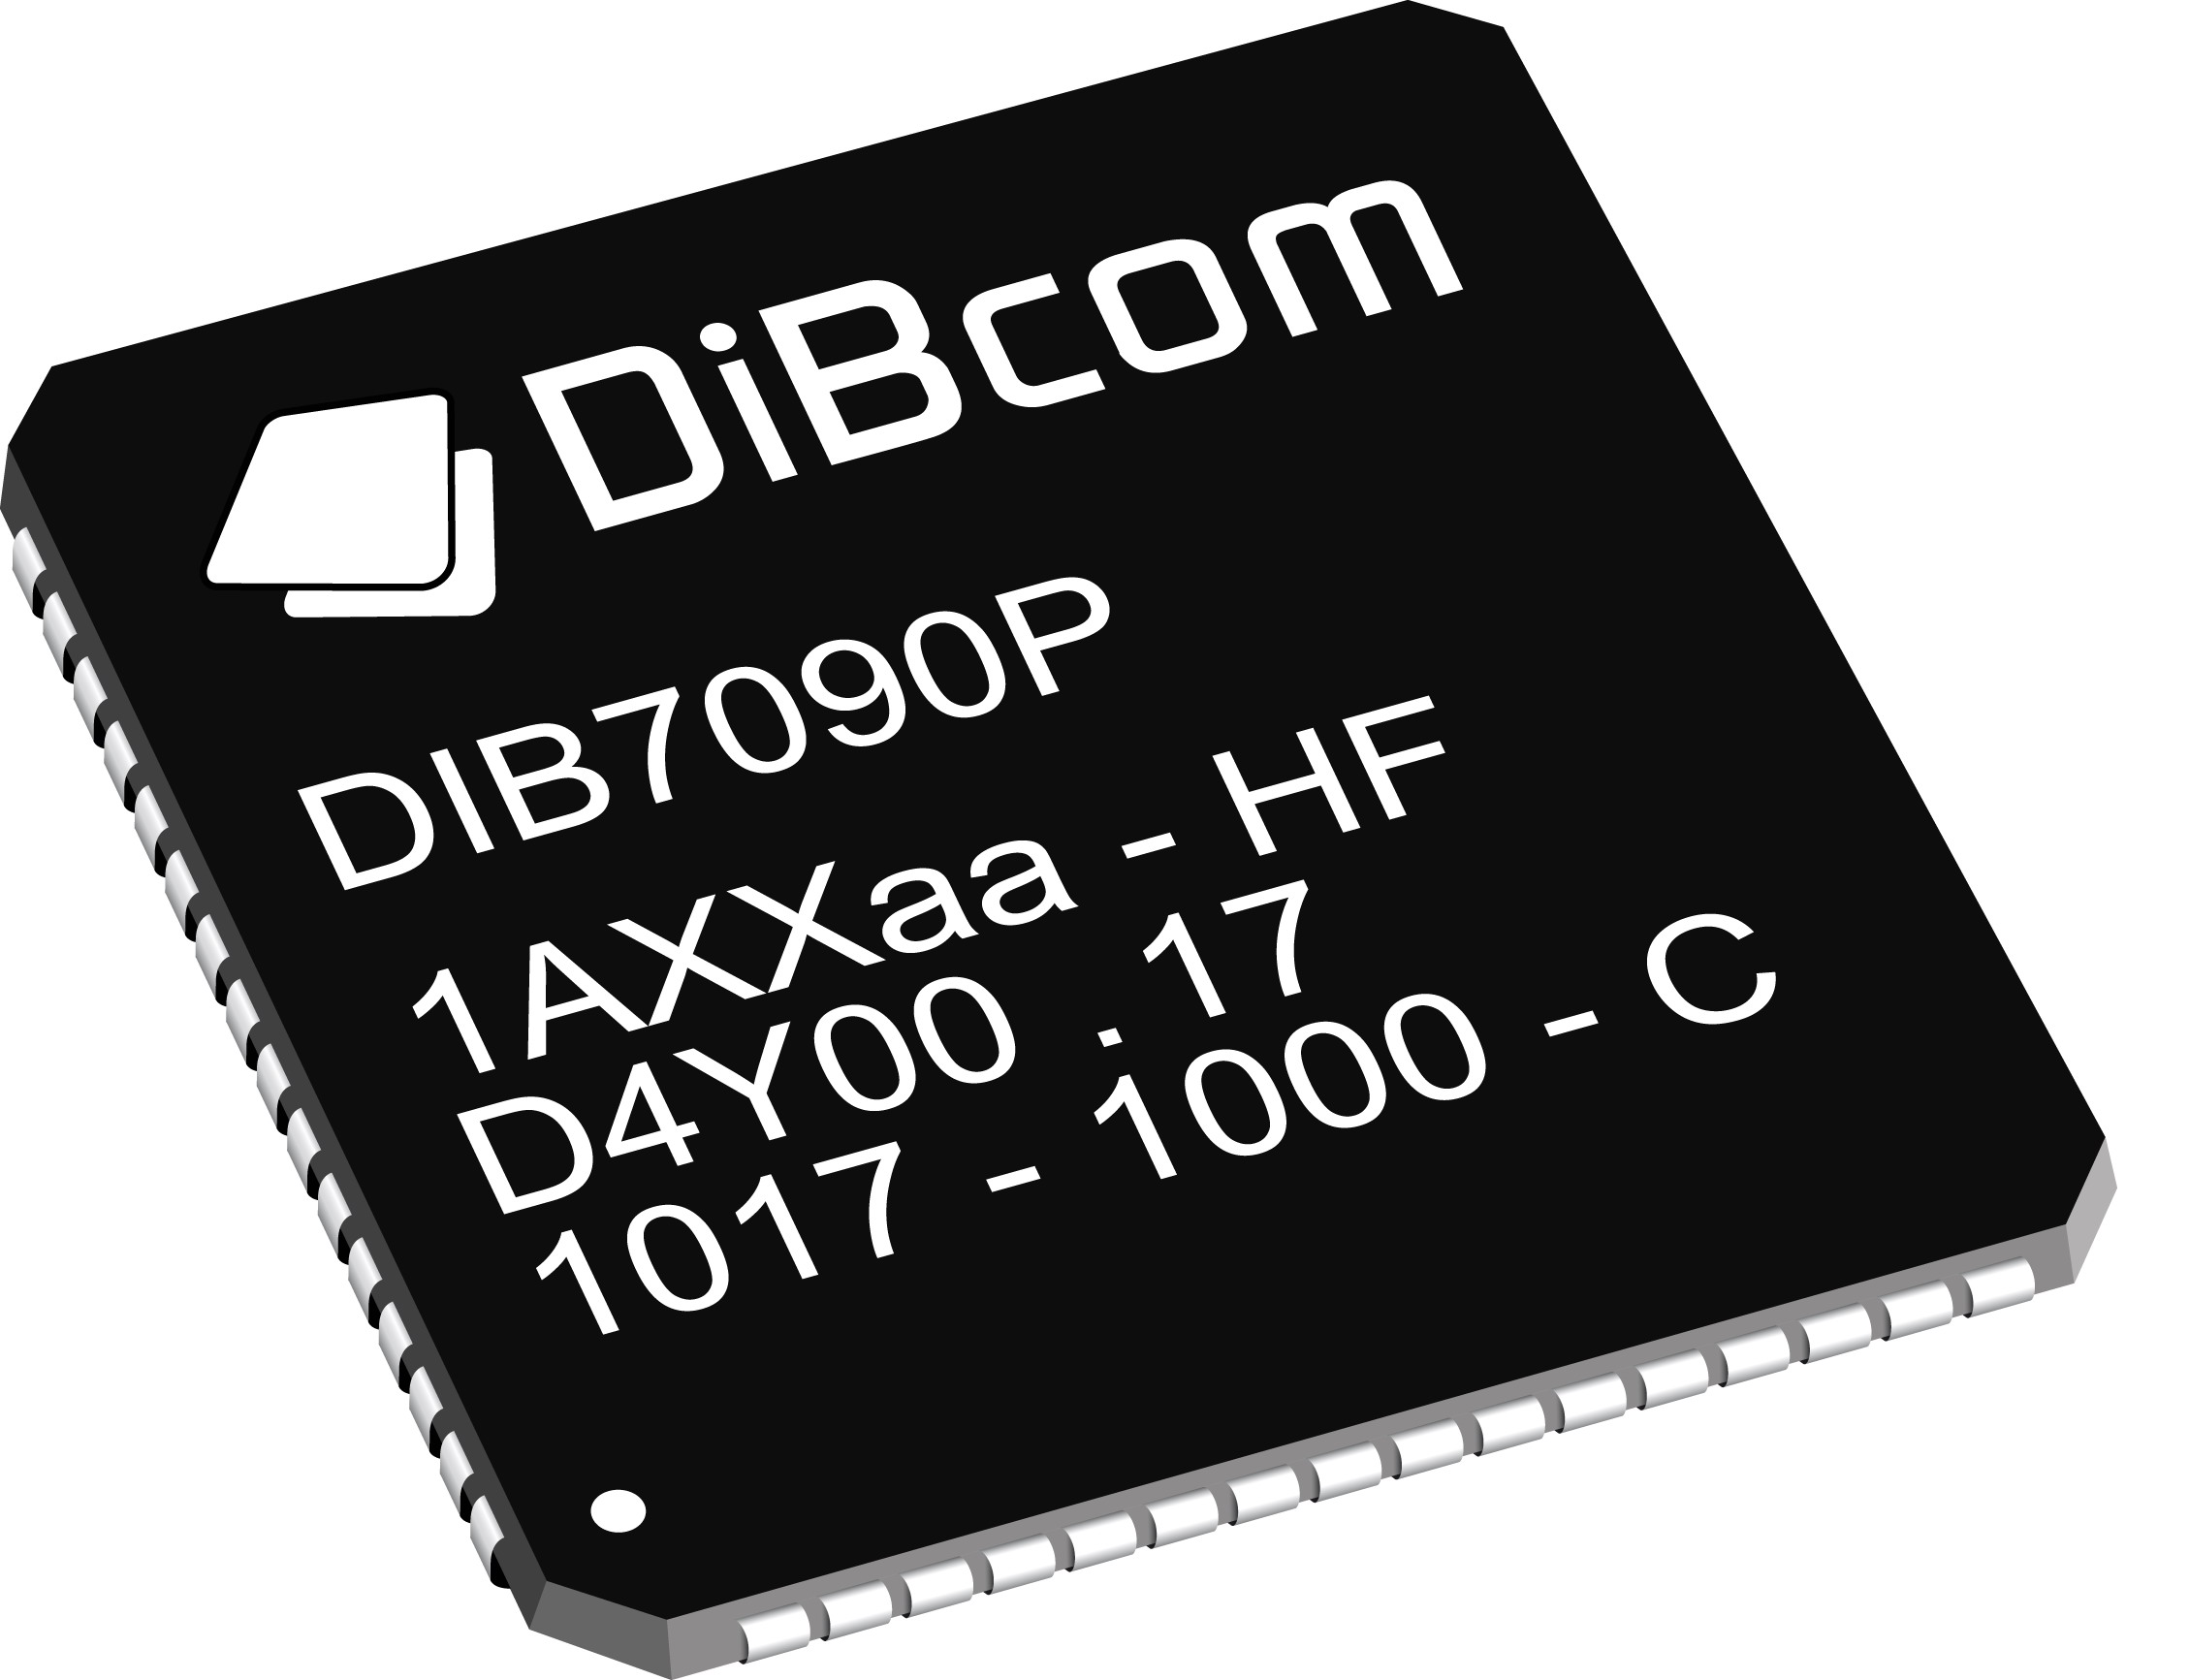 迪康发布DVB-T和ISDB-T调谐-解调SoC方案